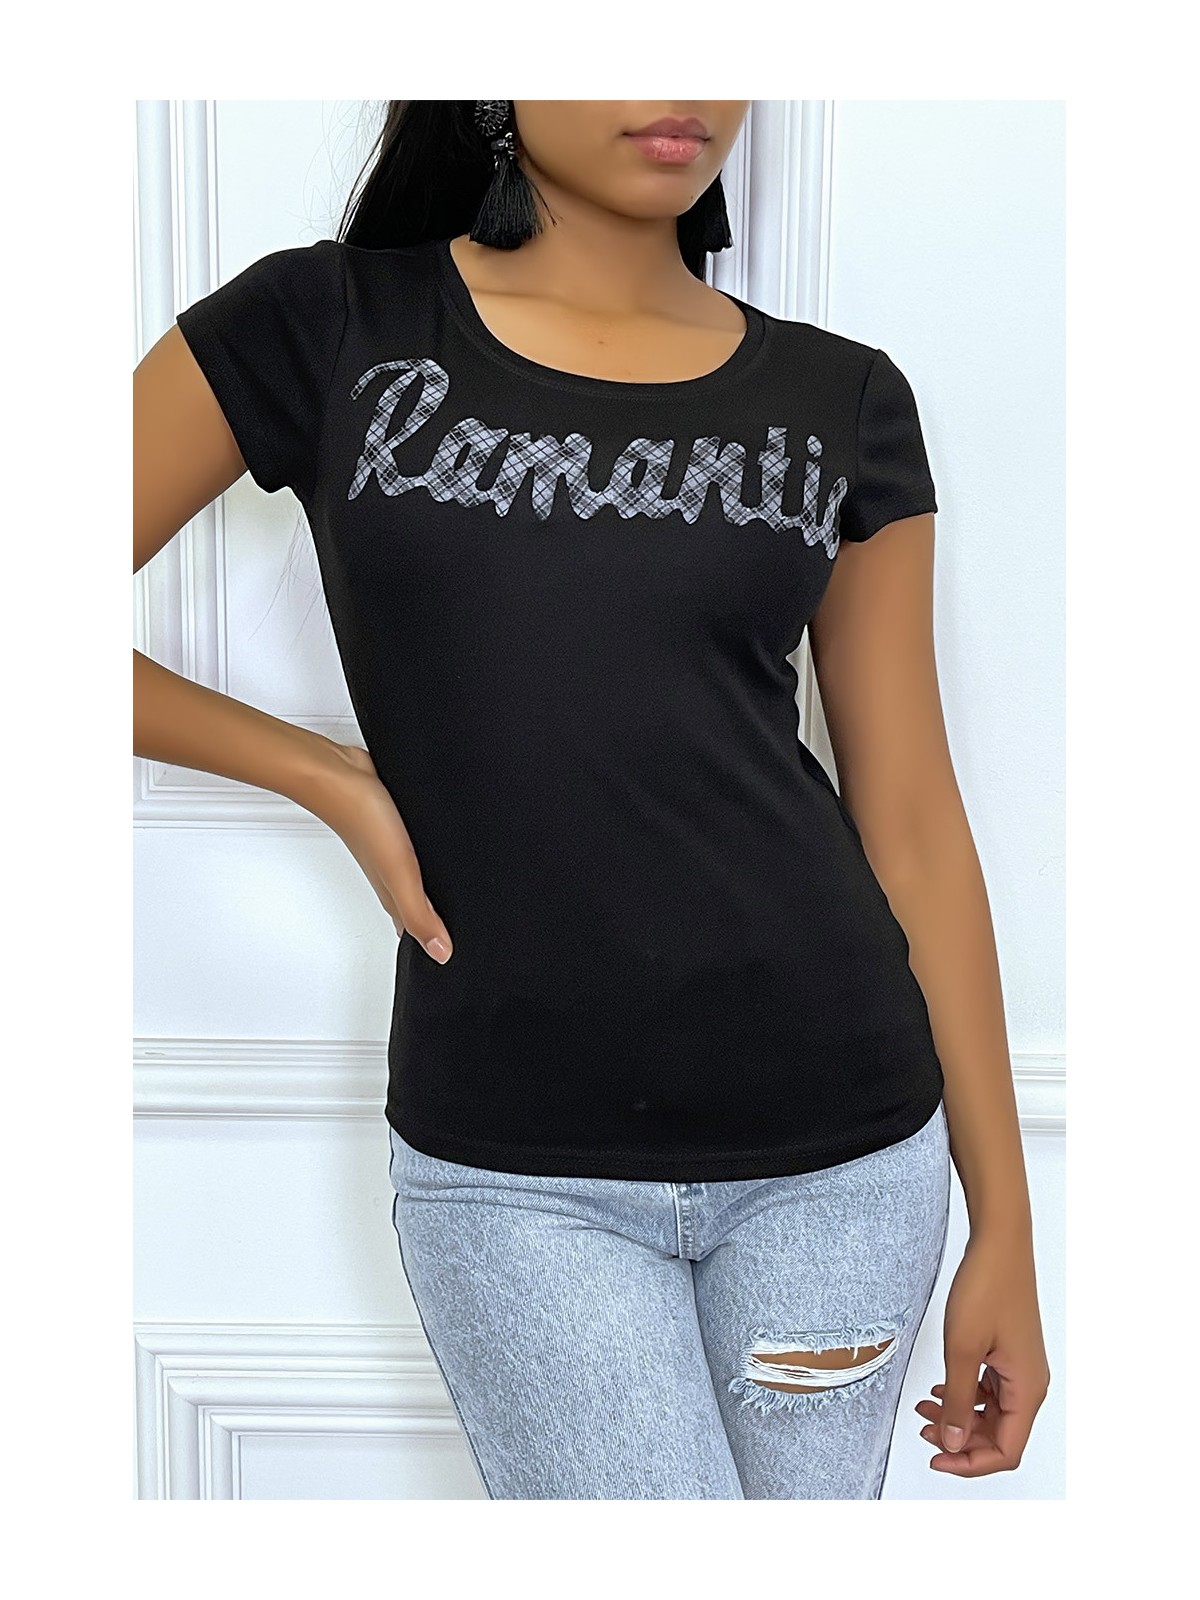 T-shirt noir à col rond et inscription "Romantic" - 2